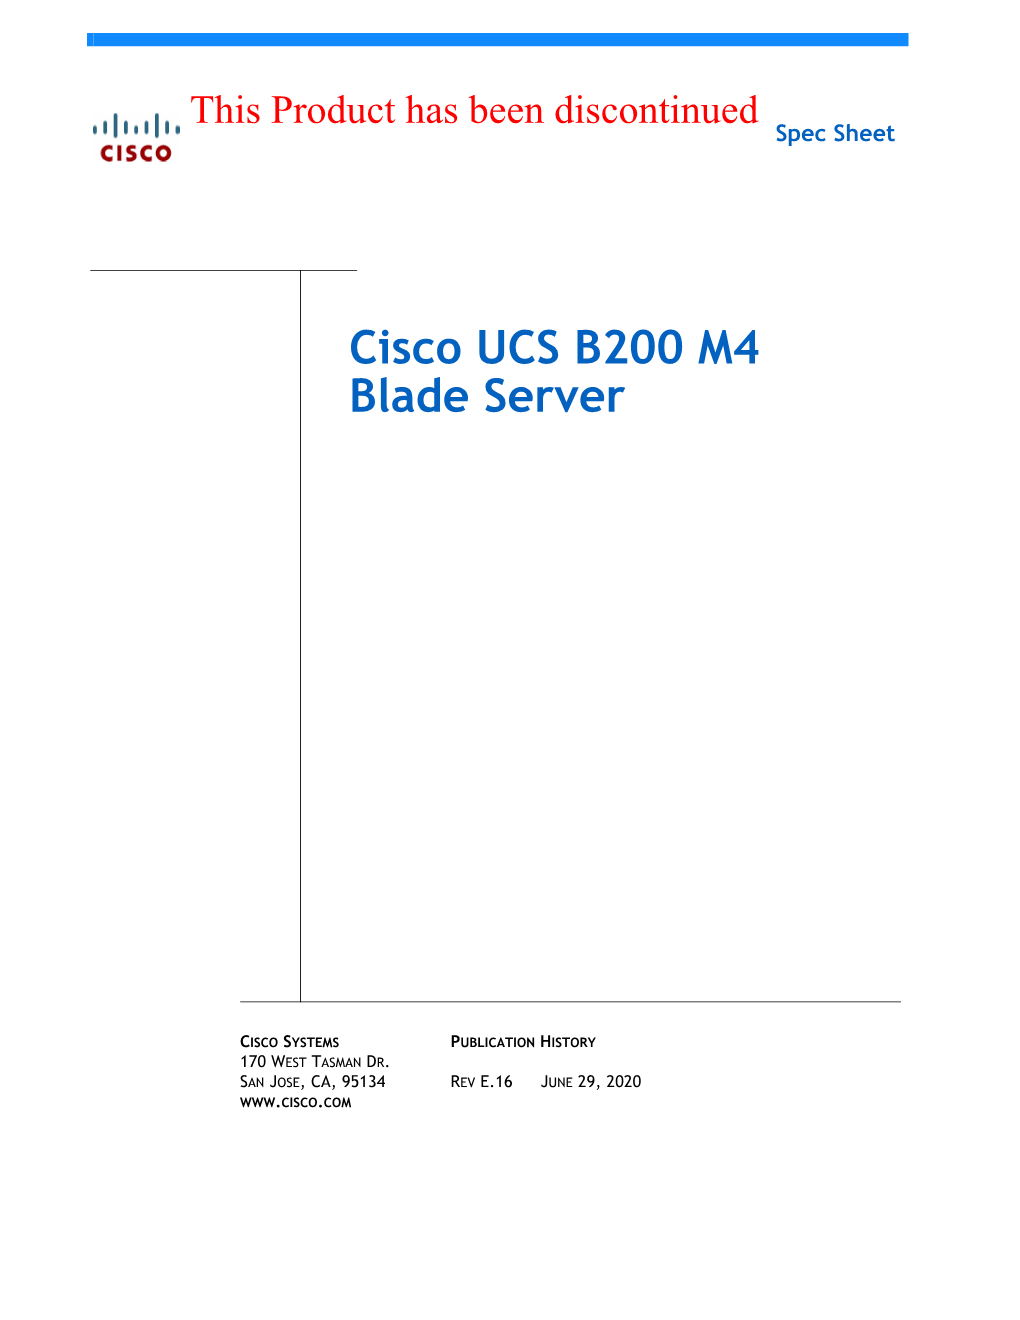 Cisco UCS B200 M4 Blade Server Spec Sheet